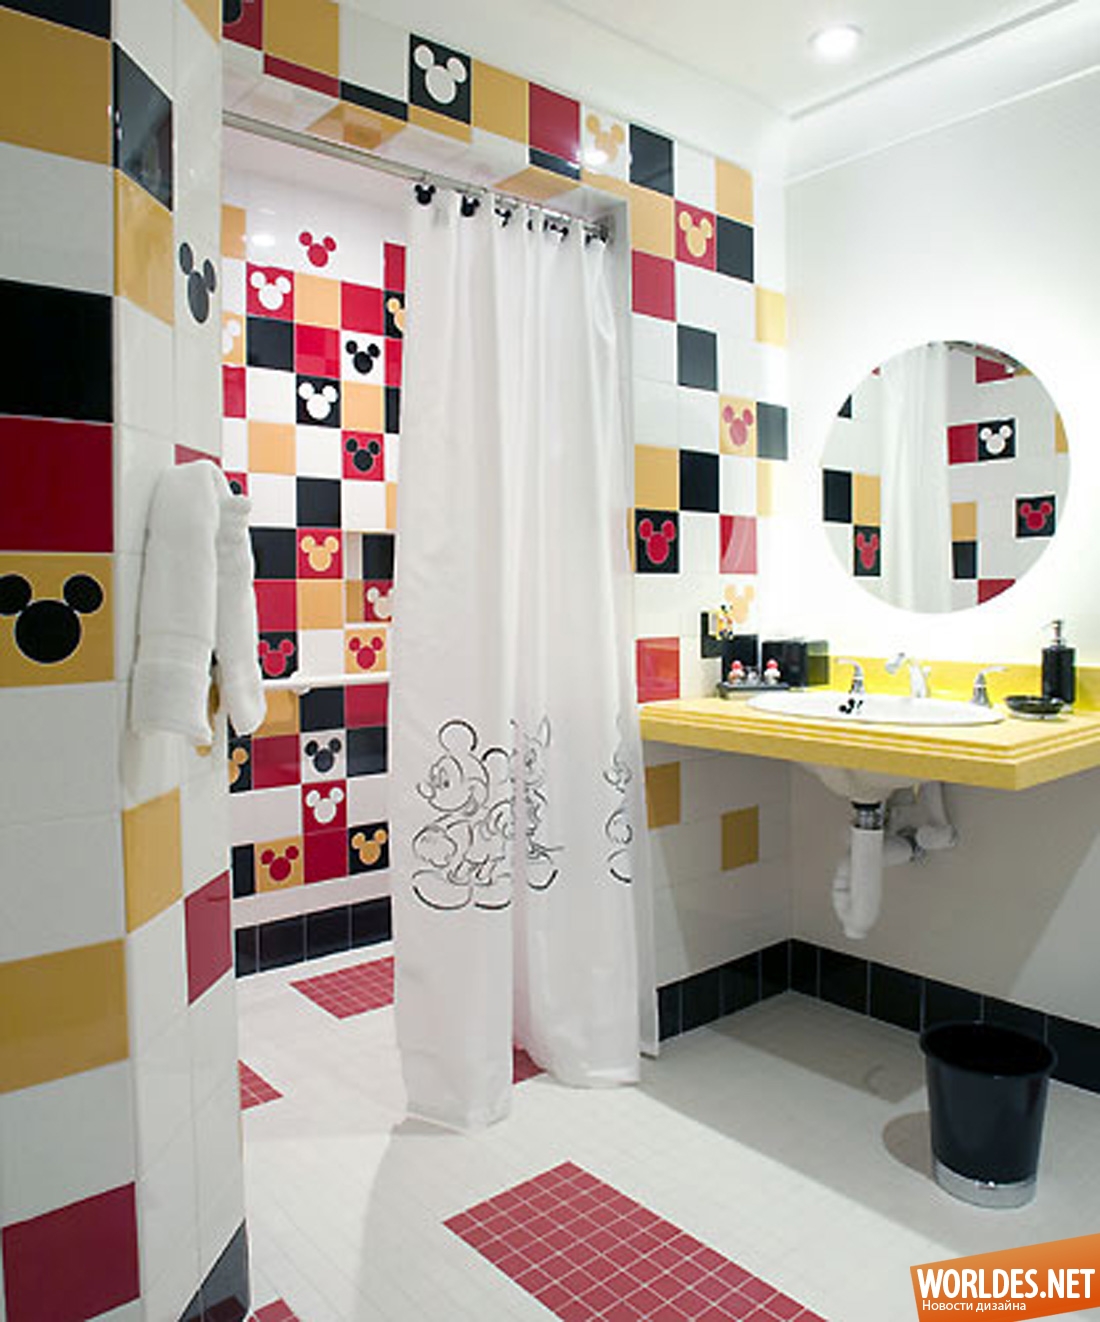 ванная комната для детей, детская ванная комната, детская ванная, ванная комната для ребенка, интерьер ванной комнаты для детей, интерьер ванной для детей, дизайн детской ванной